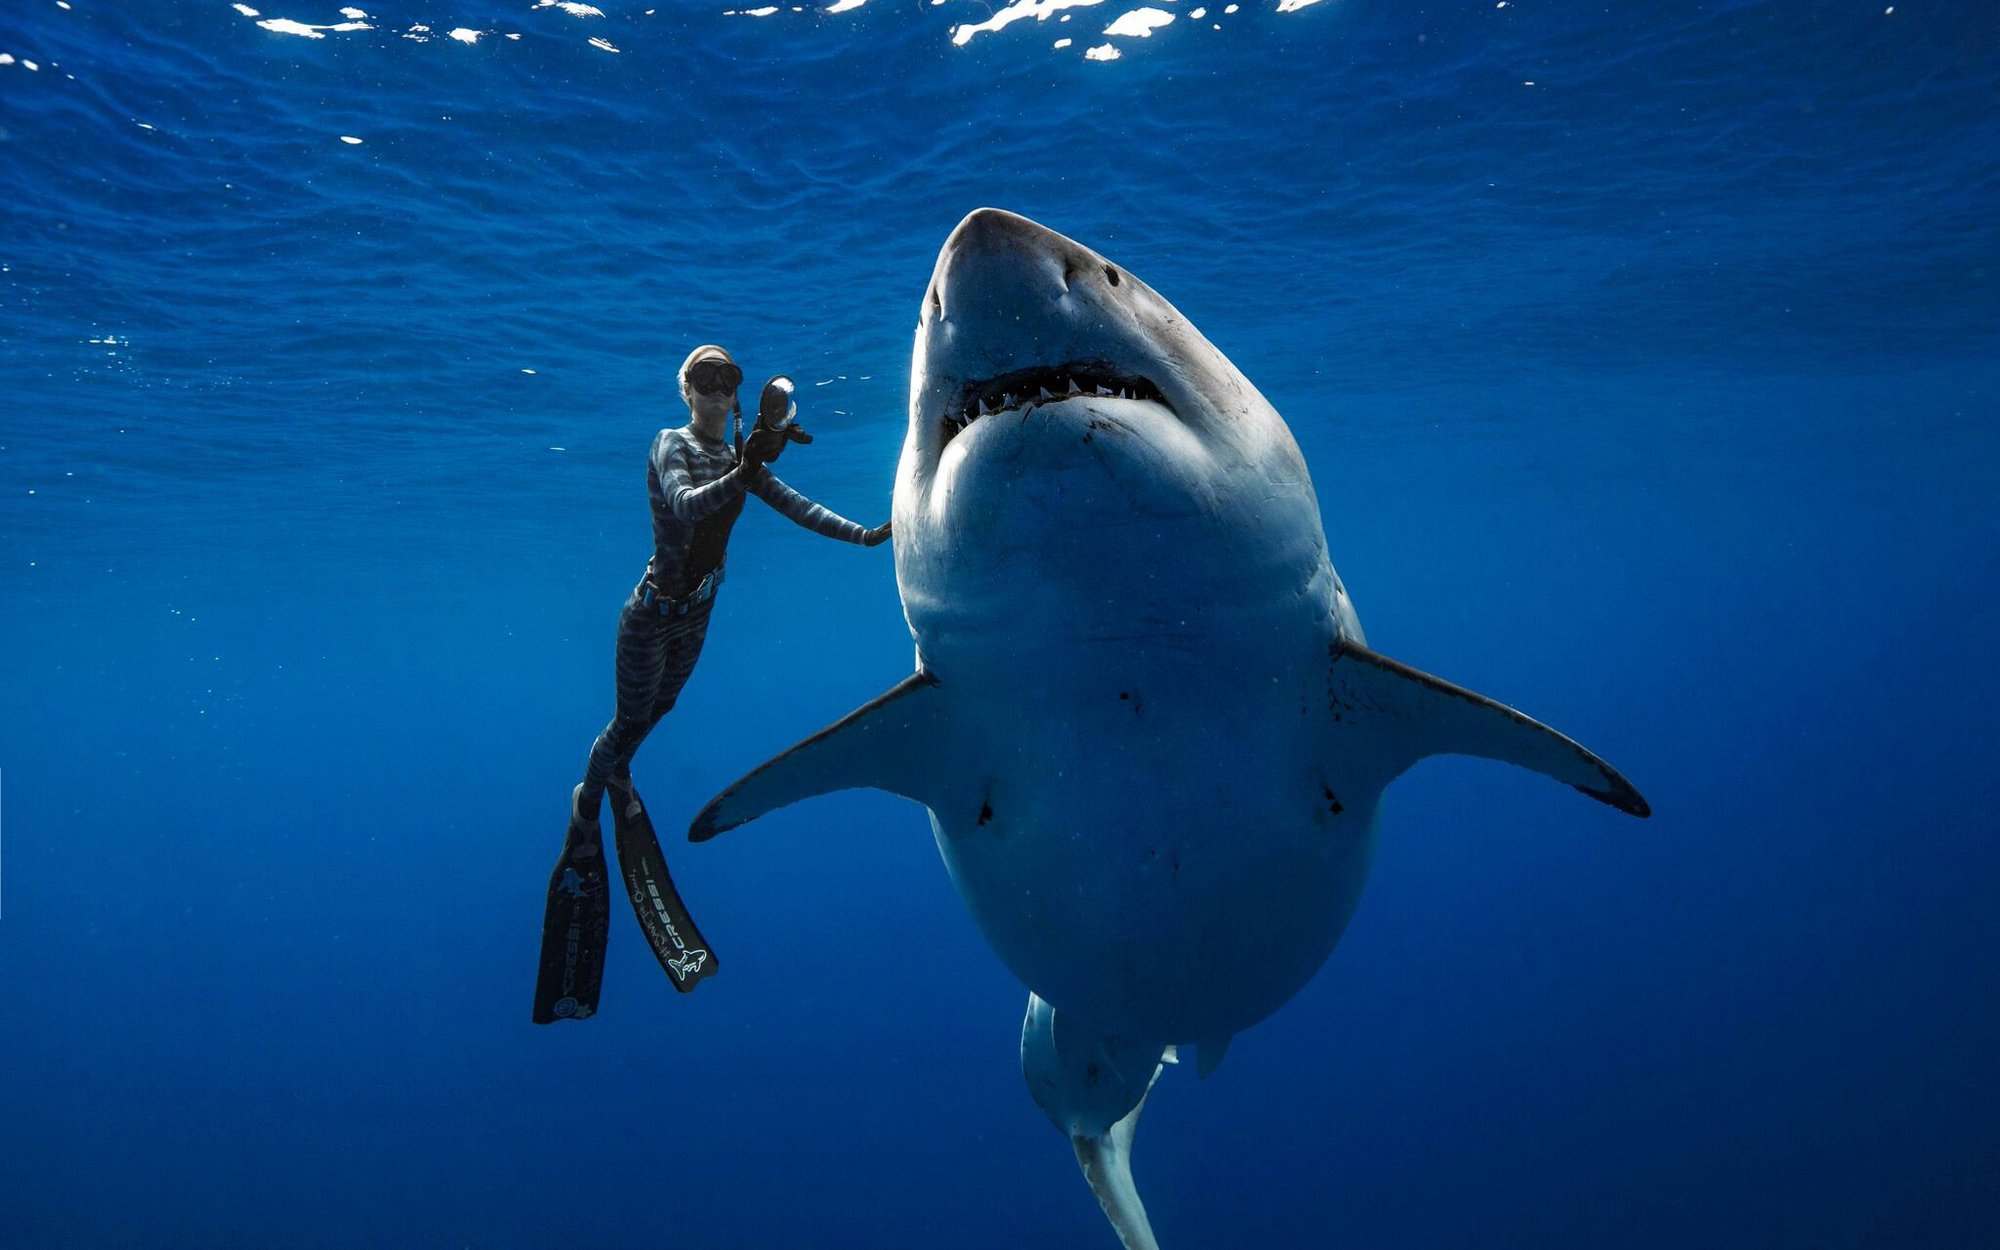 Dù bị gọi là "cá mập", nhưng loài này lại có thân hình chuẩn nhất thế giới, không một cá thể nào thừa cân